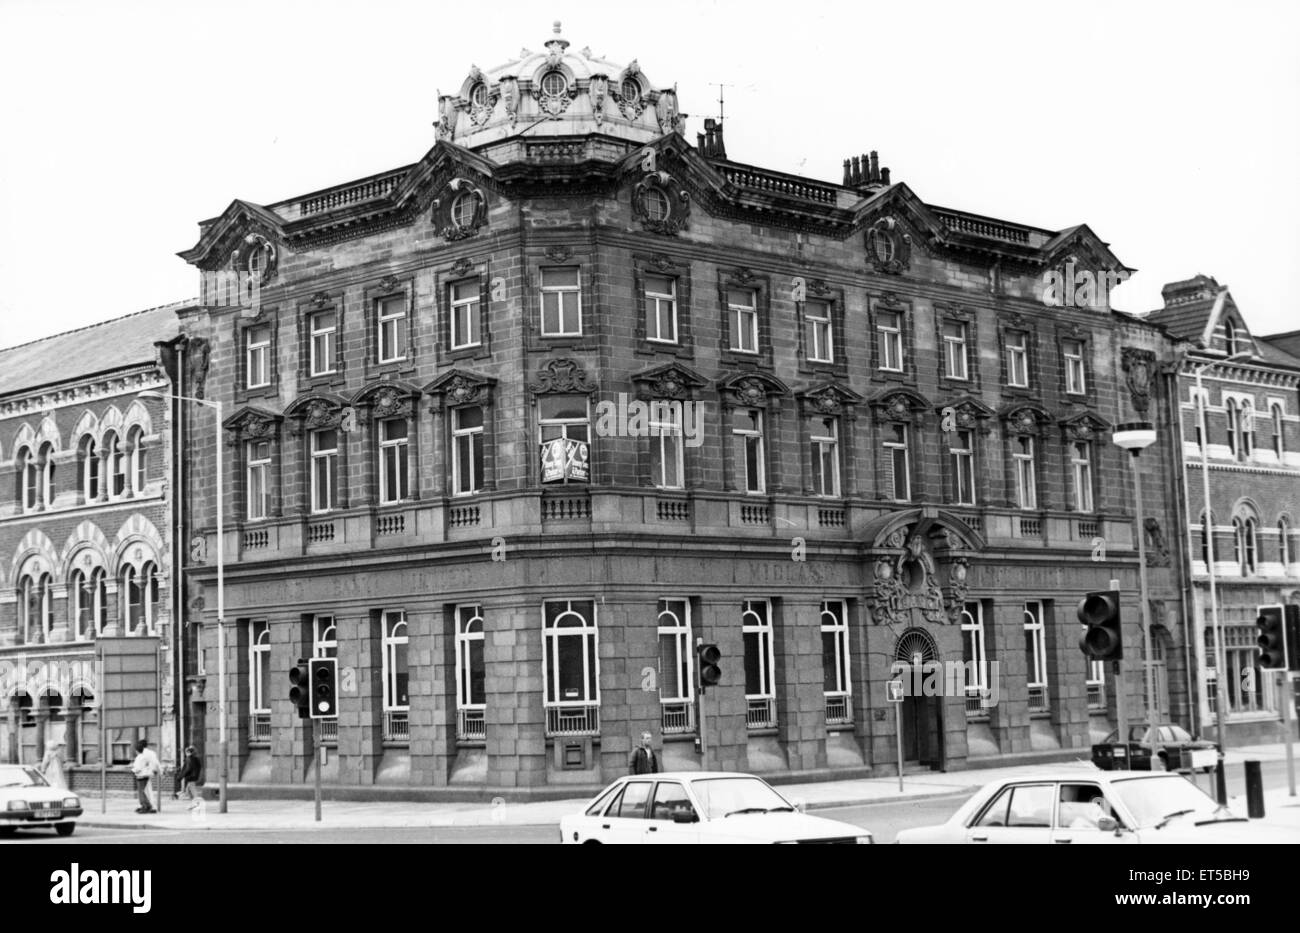 Teesside Chamber Of Commerce hat der ehemaligen Midland Bank in der Ecke des Albert Road und Marton Road, Middlesbrough, für den Preis von ¿100, 000 gekauft. Bild 14. Juli 1988. Stockfoto